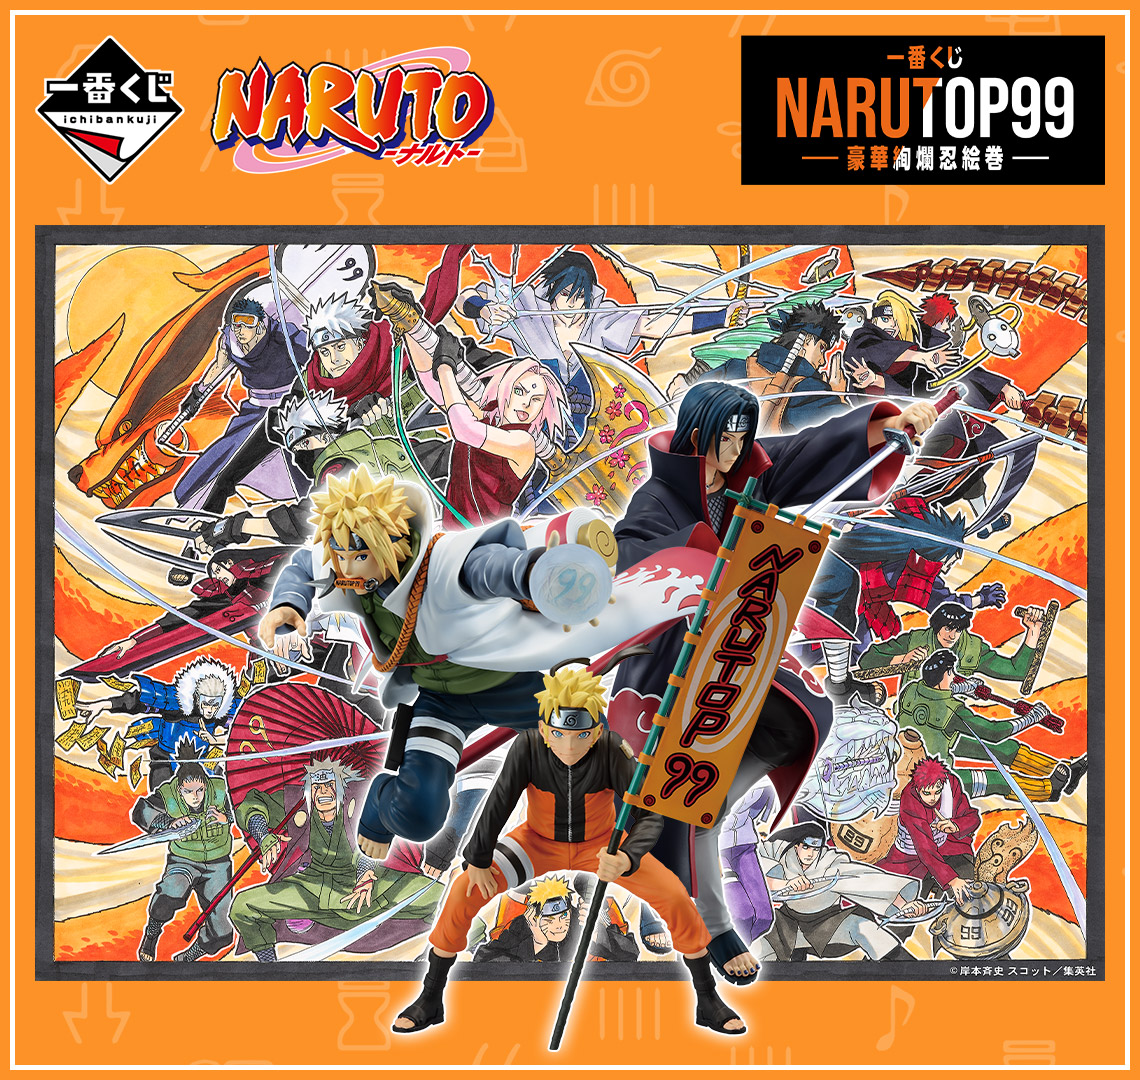 Ticket - Ichiban Kuji - Naruto - Narutop99